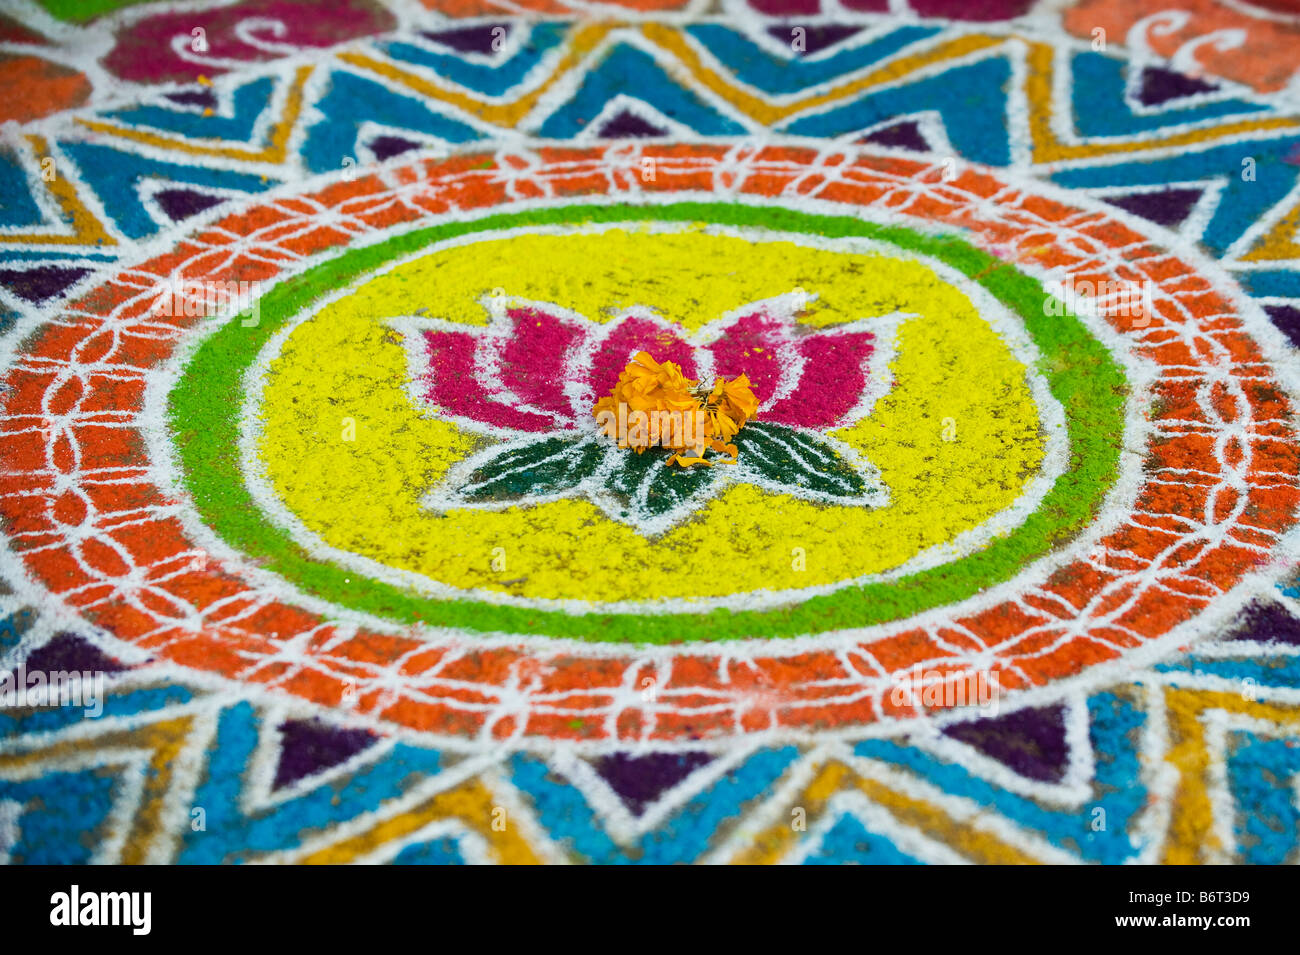 Rangoli festival diseño de flor de loto en un indio durante el festival de la calle sankranthi / pongal. Puttaparthi, Andhra Pradesh, India Foto de stock